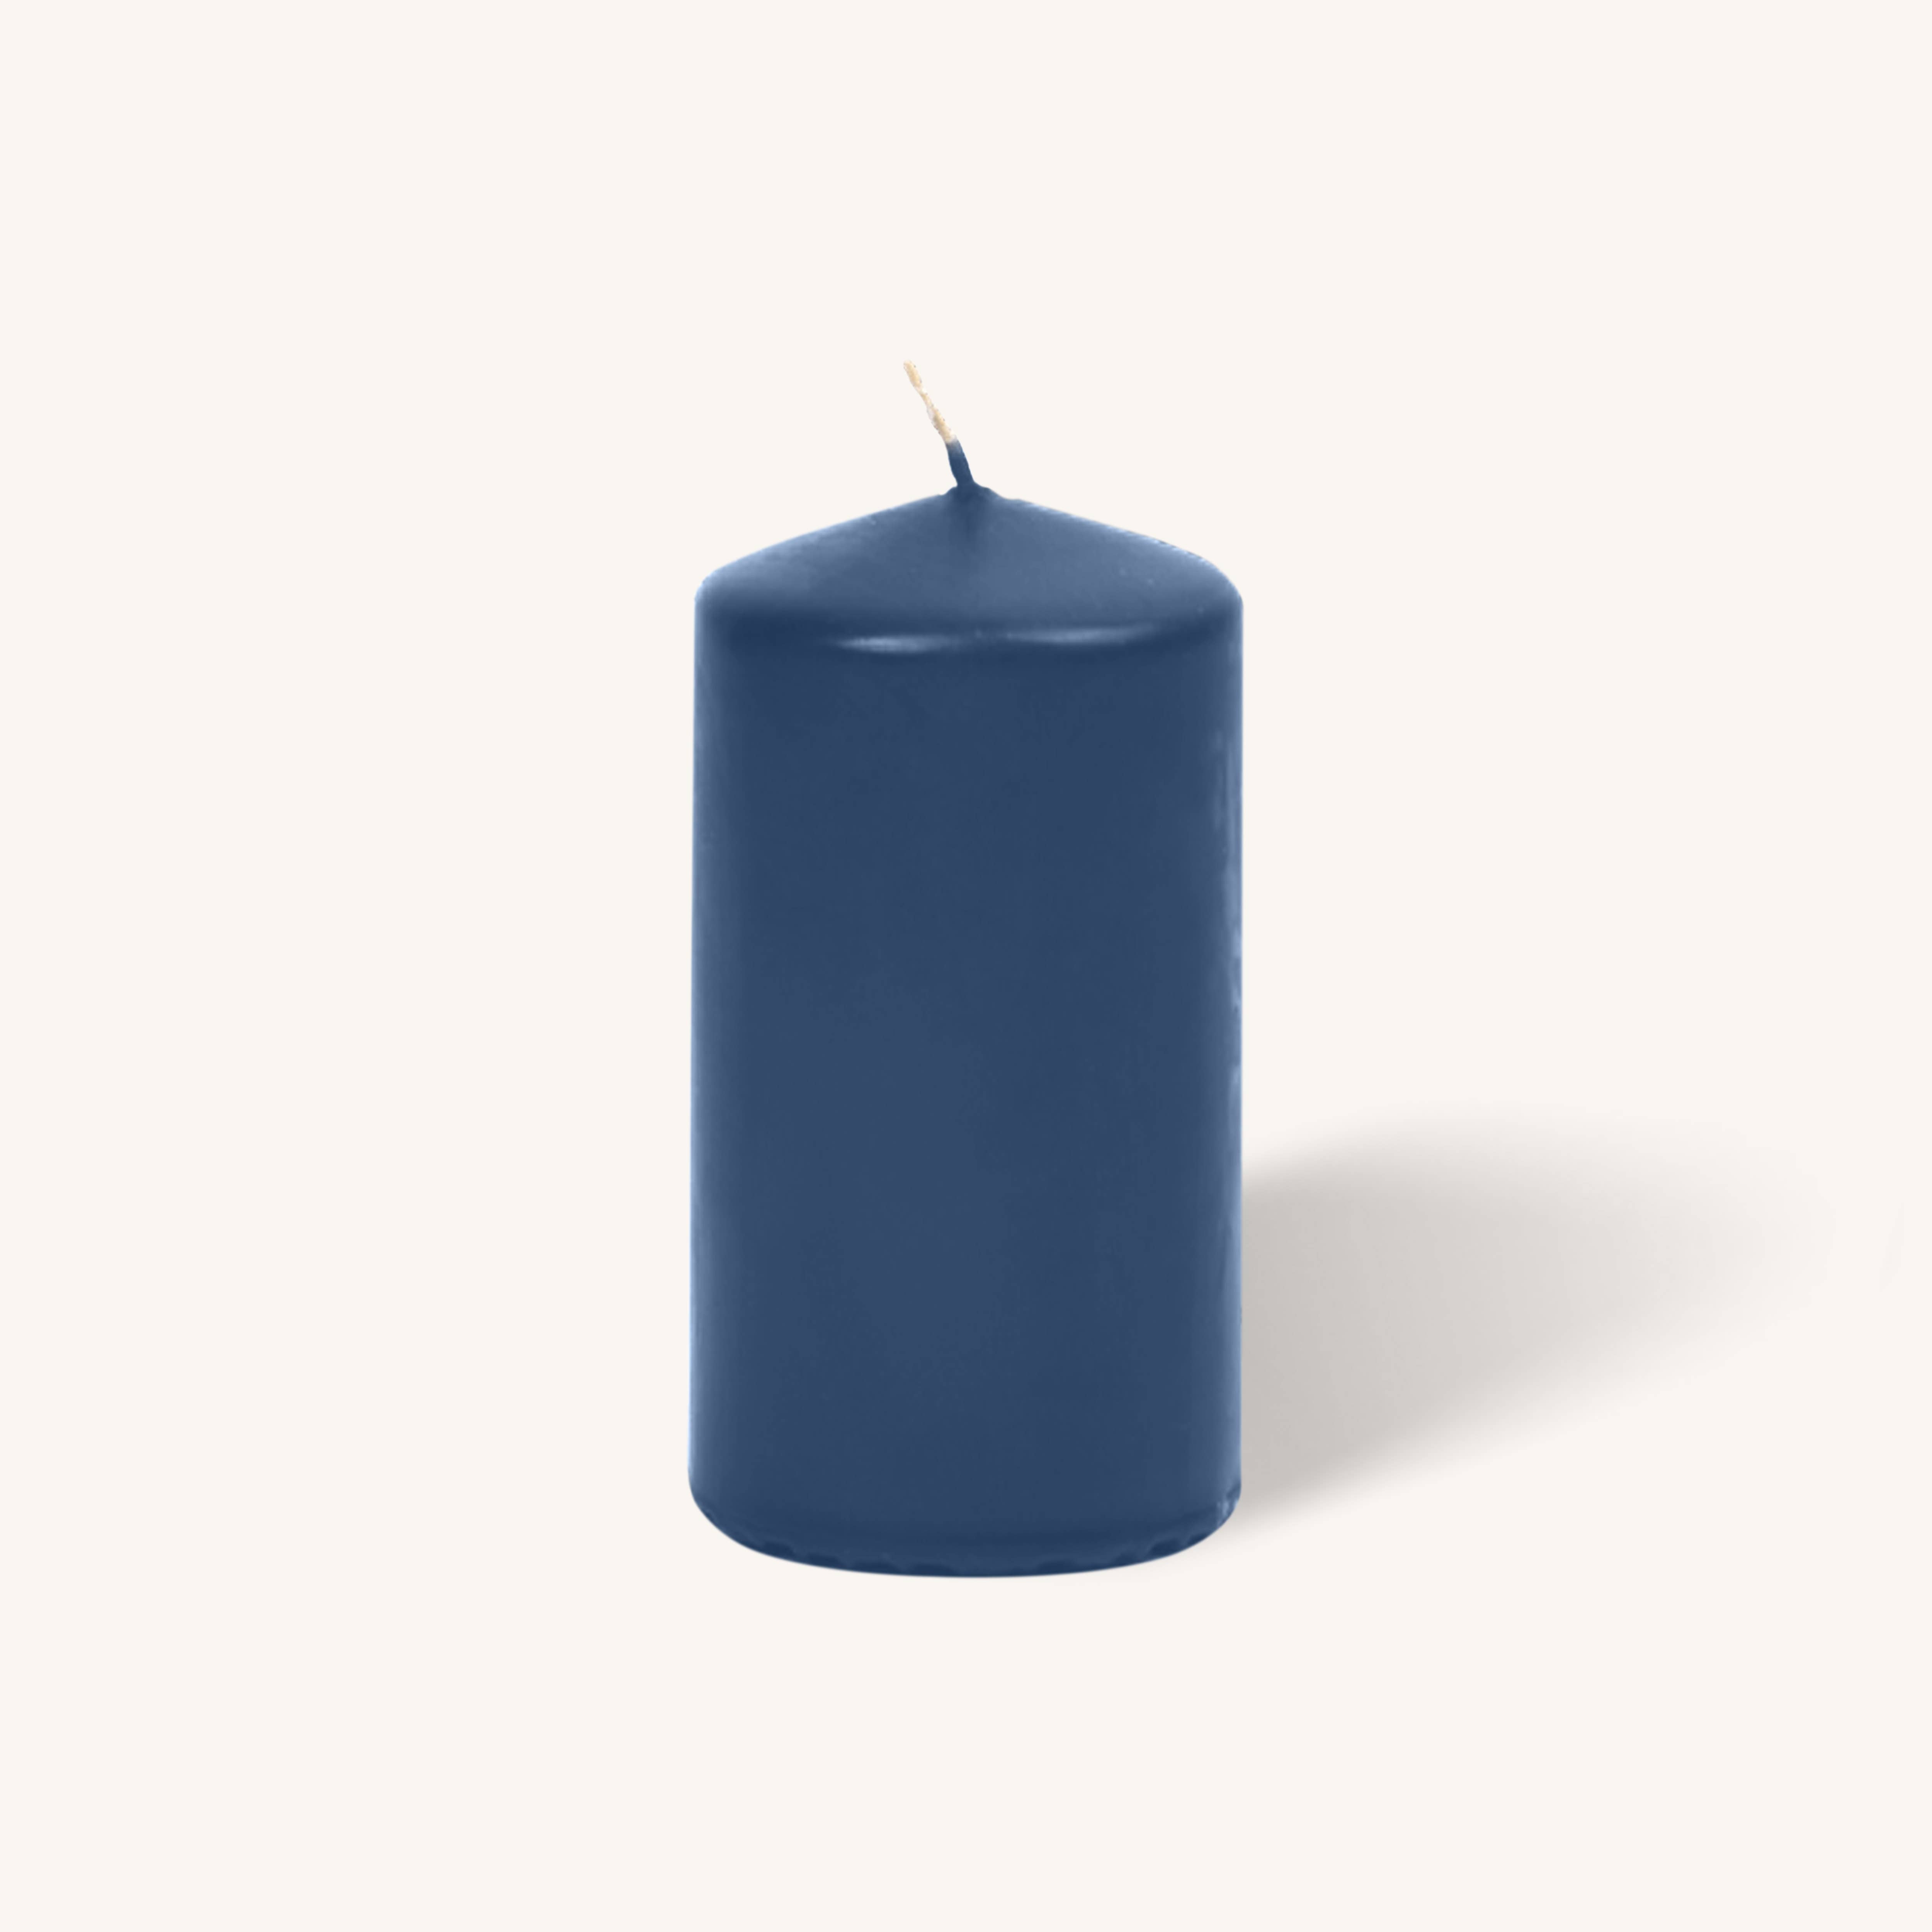 Midnight Blue Pillar Candles - 3" x 6" - 6 Pack